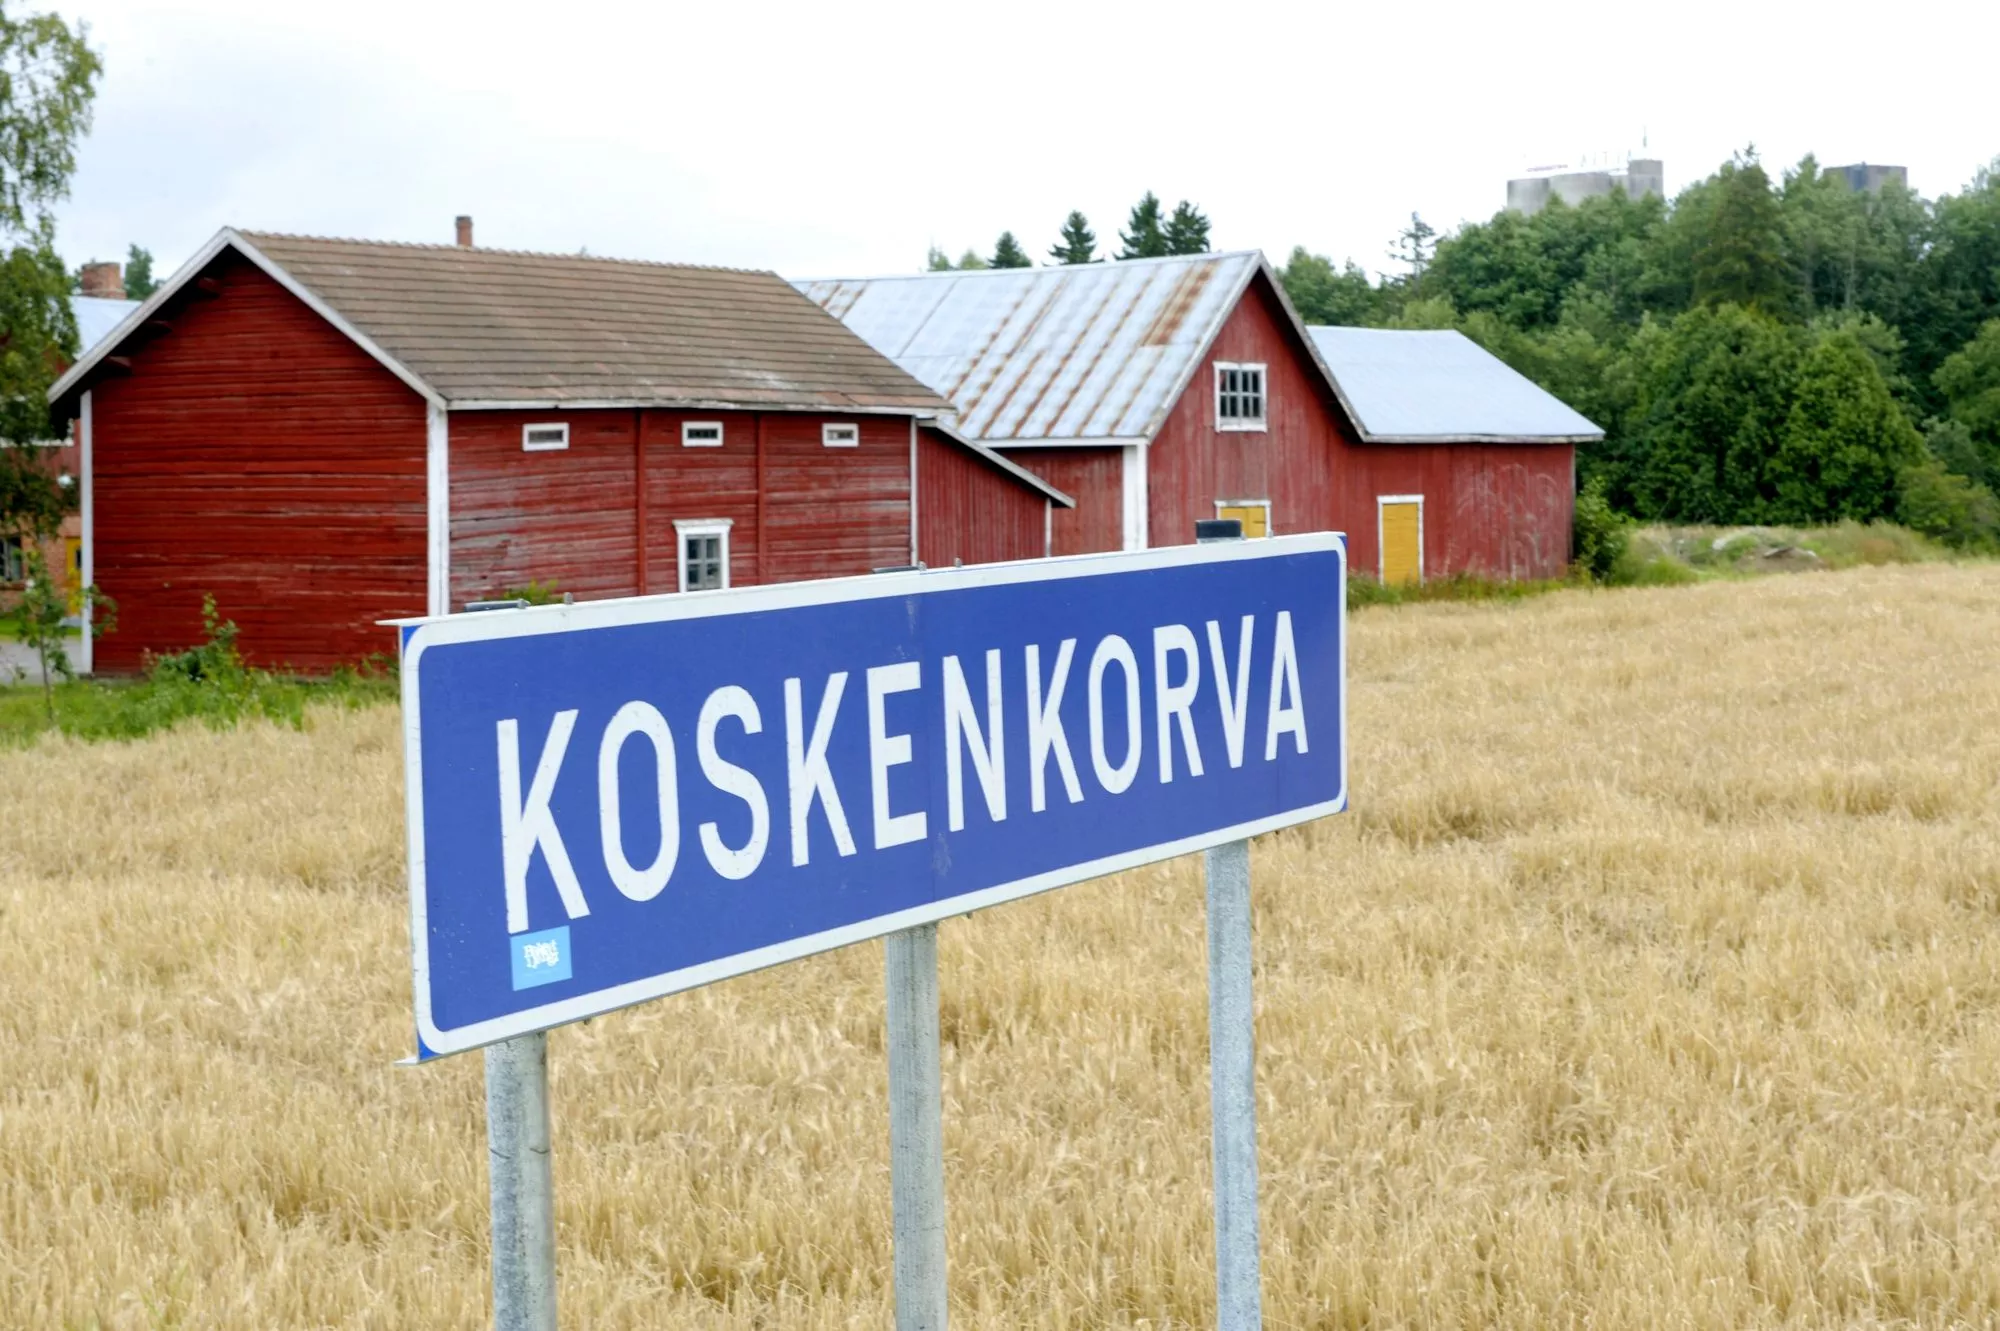 Koskenkorvan kylä on Etelä-Pohjanmaalla. <span class="typography__copyright">© LEHTIKUVA / MARTTI KAINULAINEN</span>